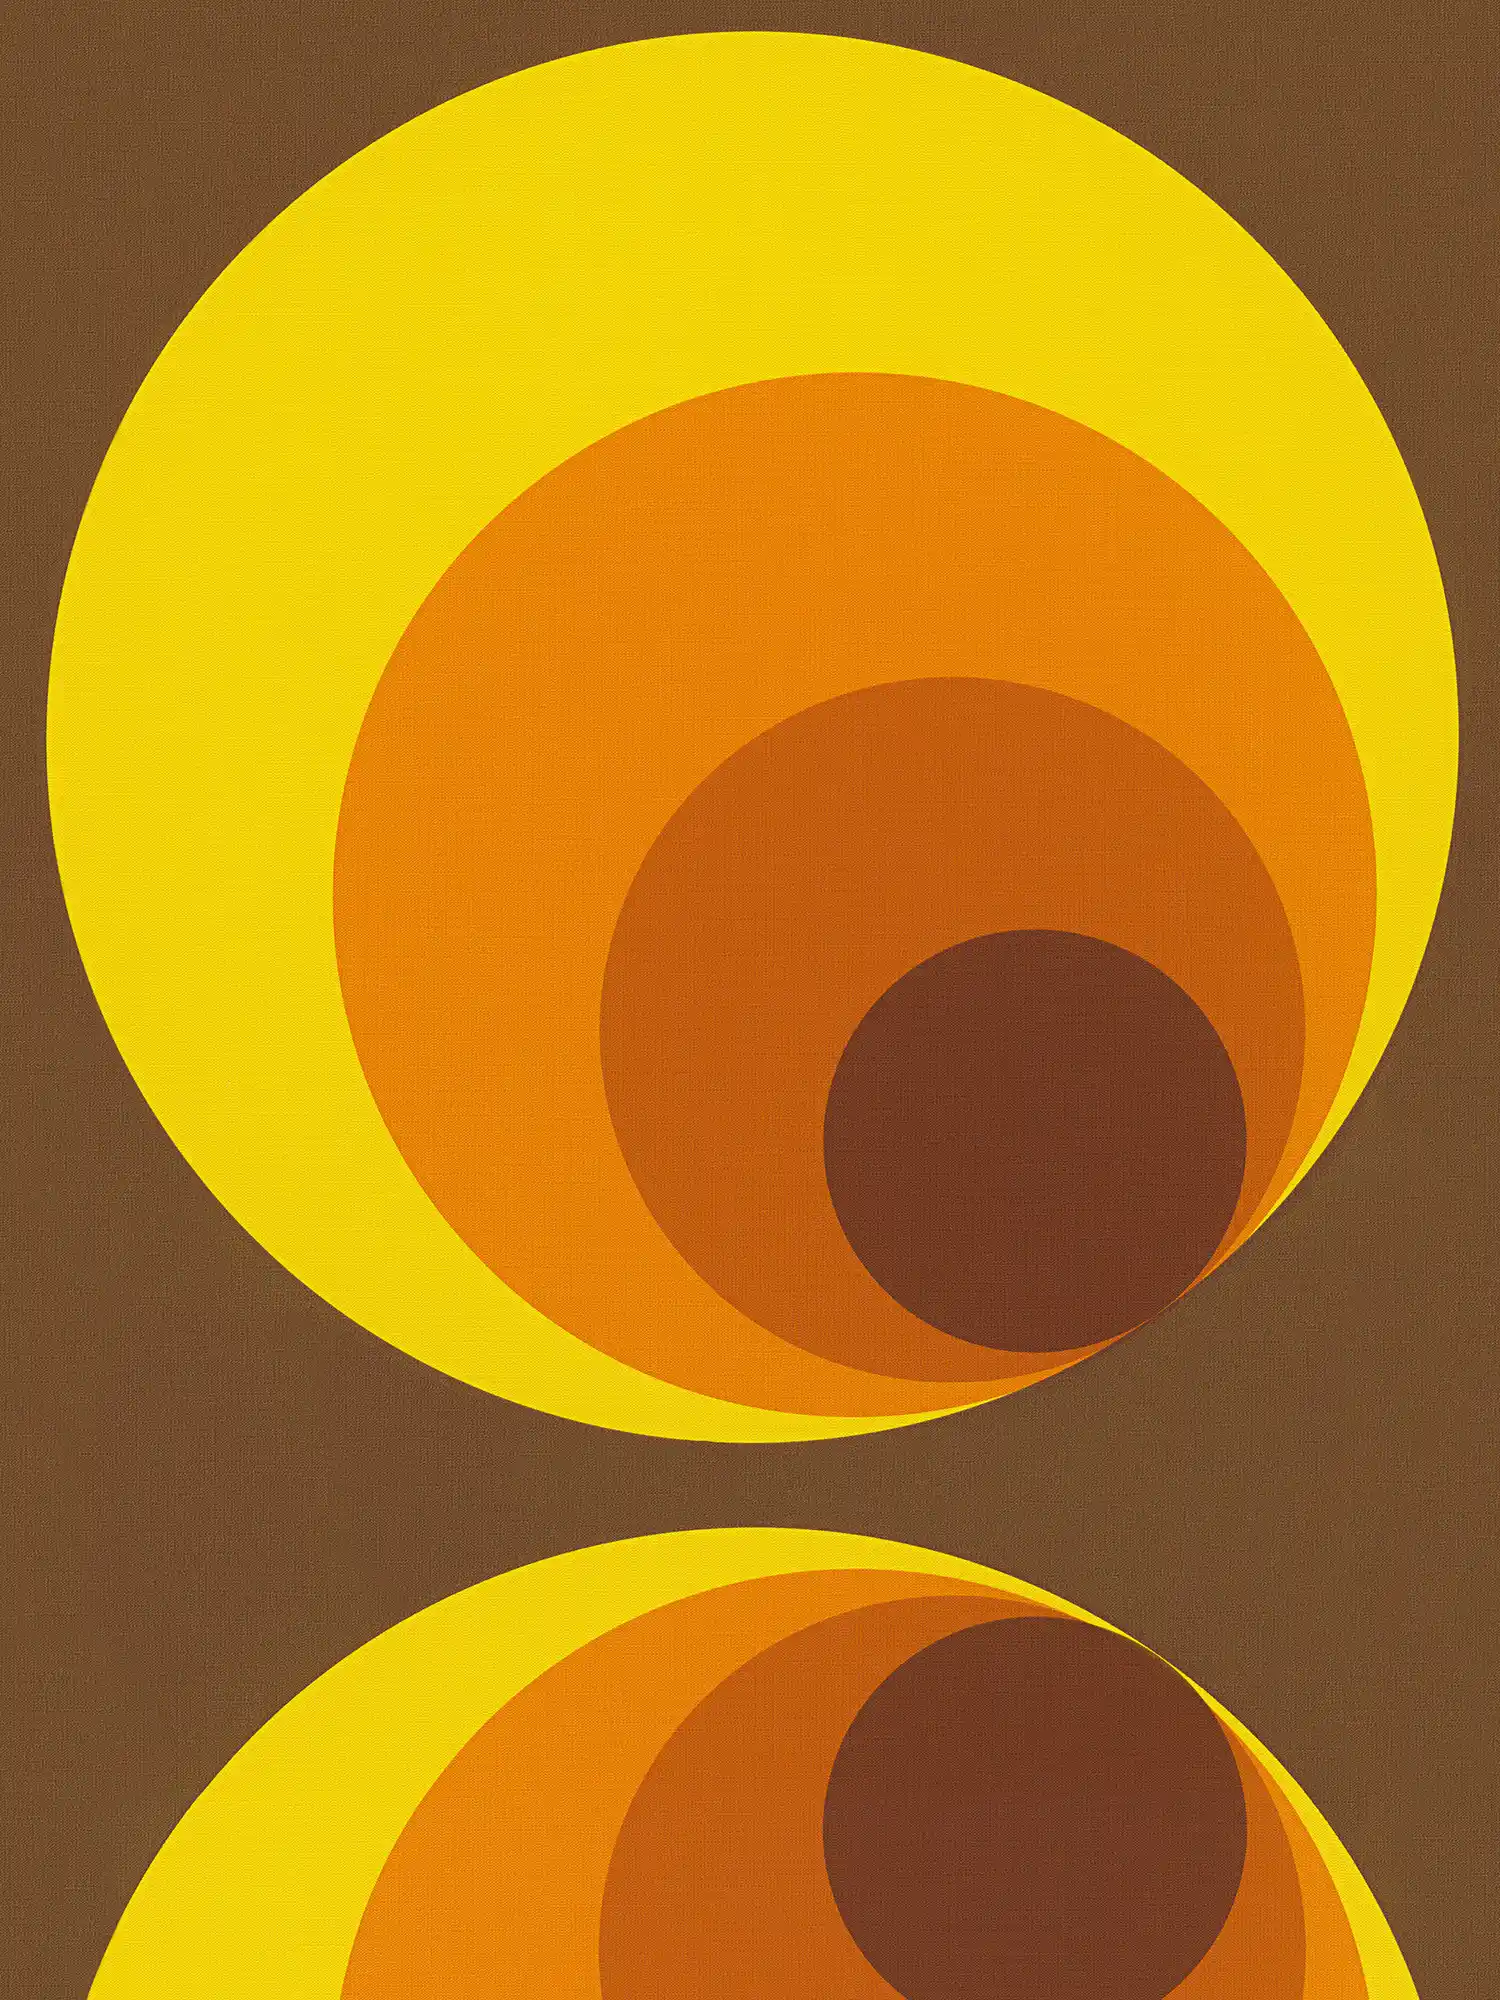         Vintage Tapete mit Retro Design – Braun, Gelb, Orange
    